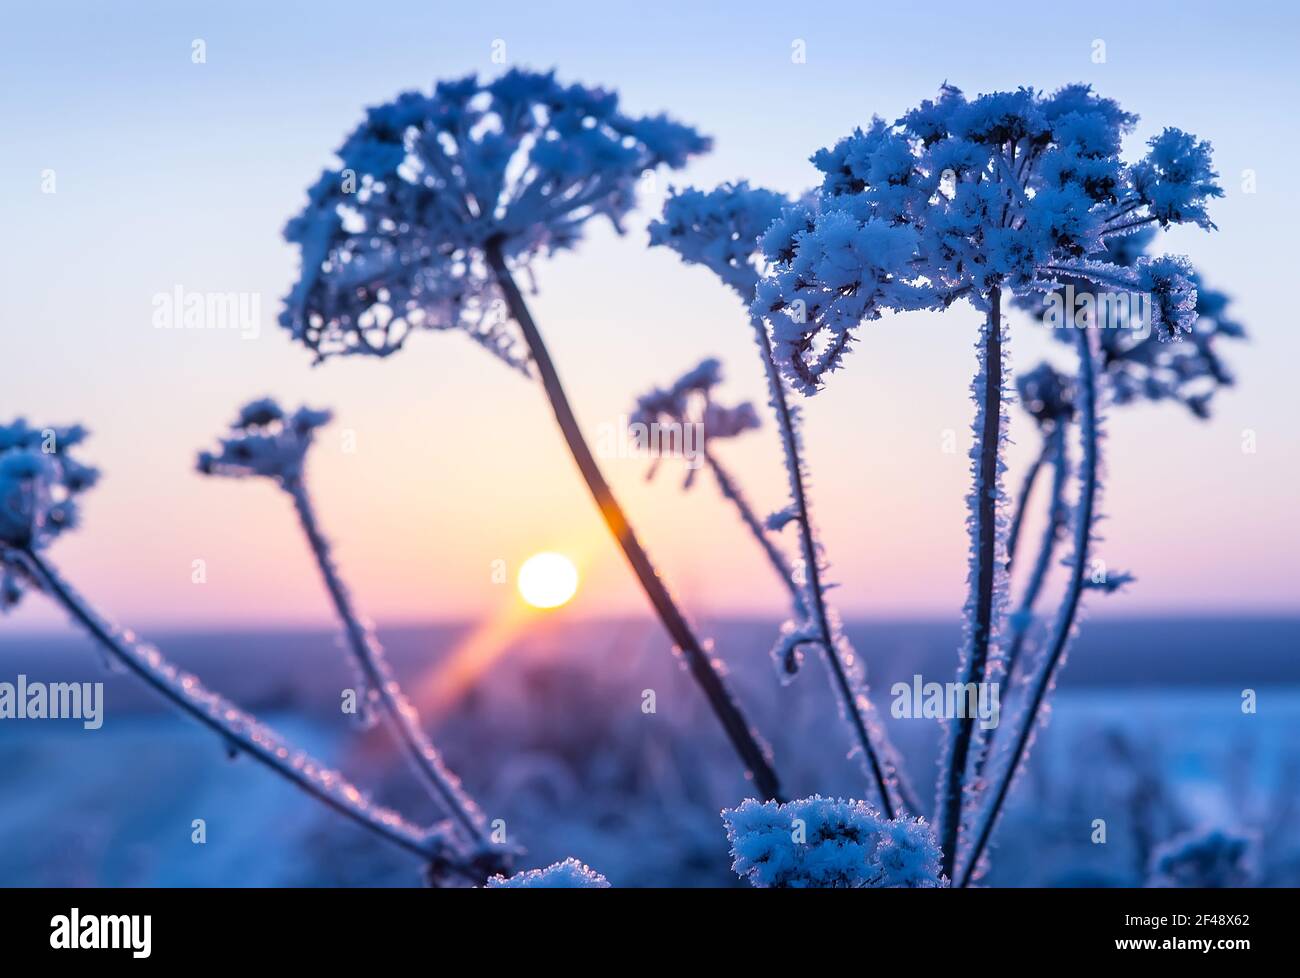 Plante de paysage d'hiver couverte de neige sur le fond de coucher de soleil Banque D'Images